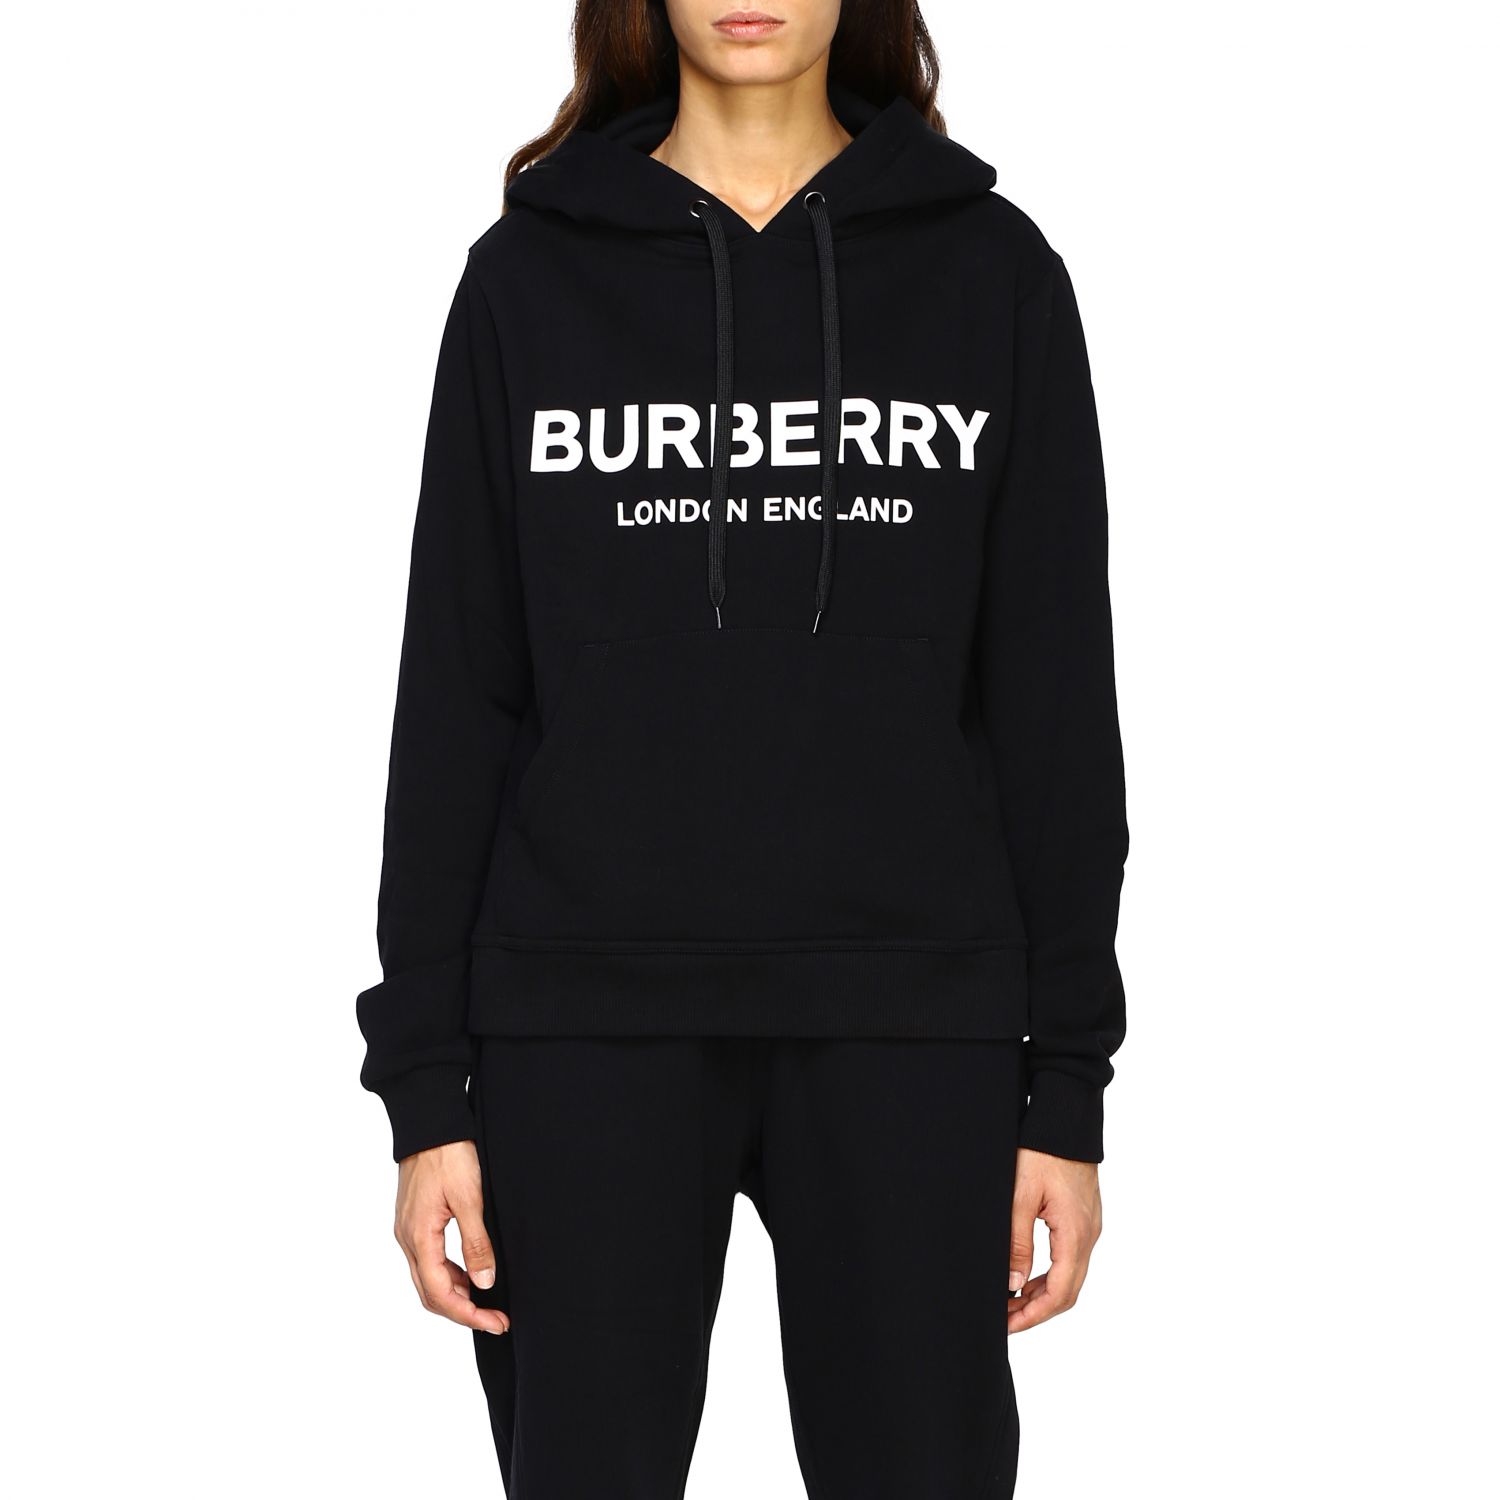 burberry sweatshirt womens